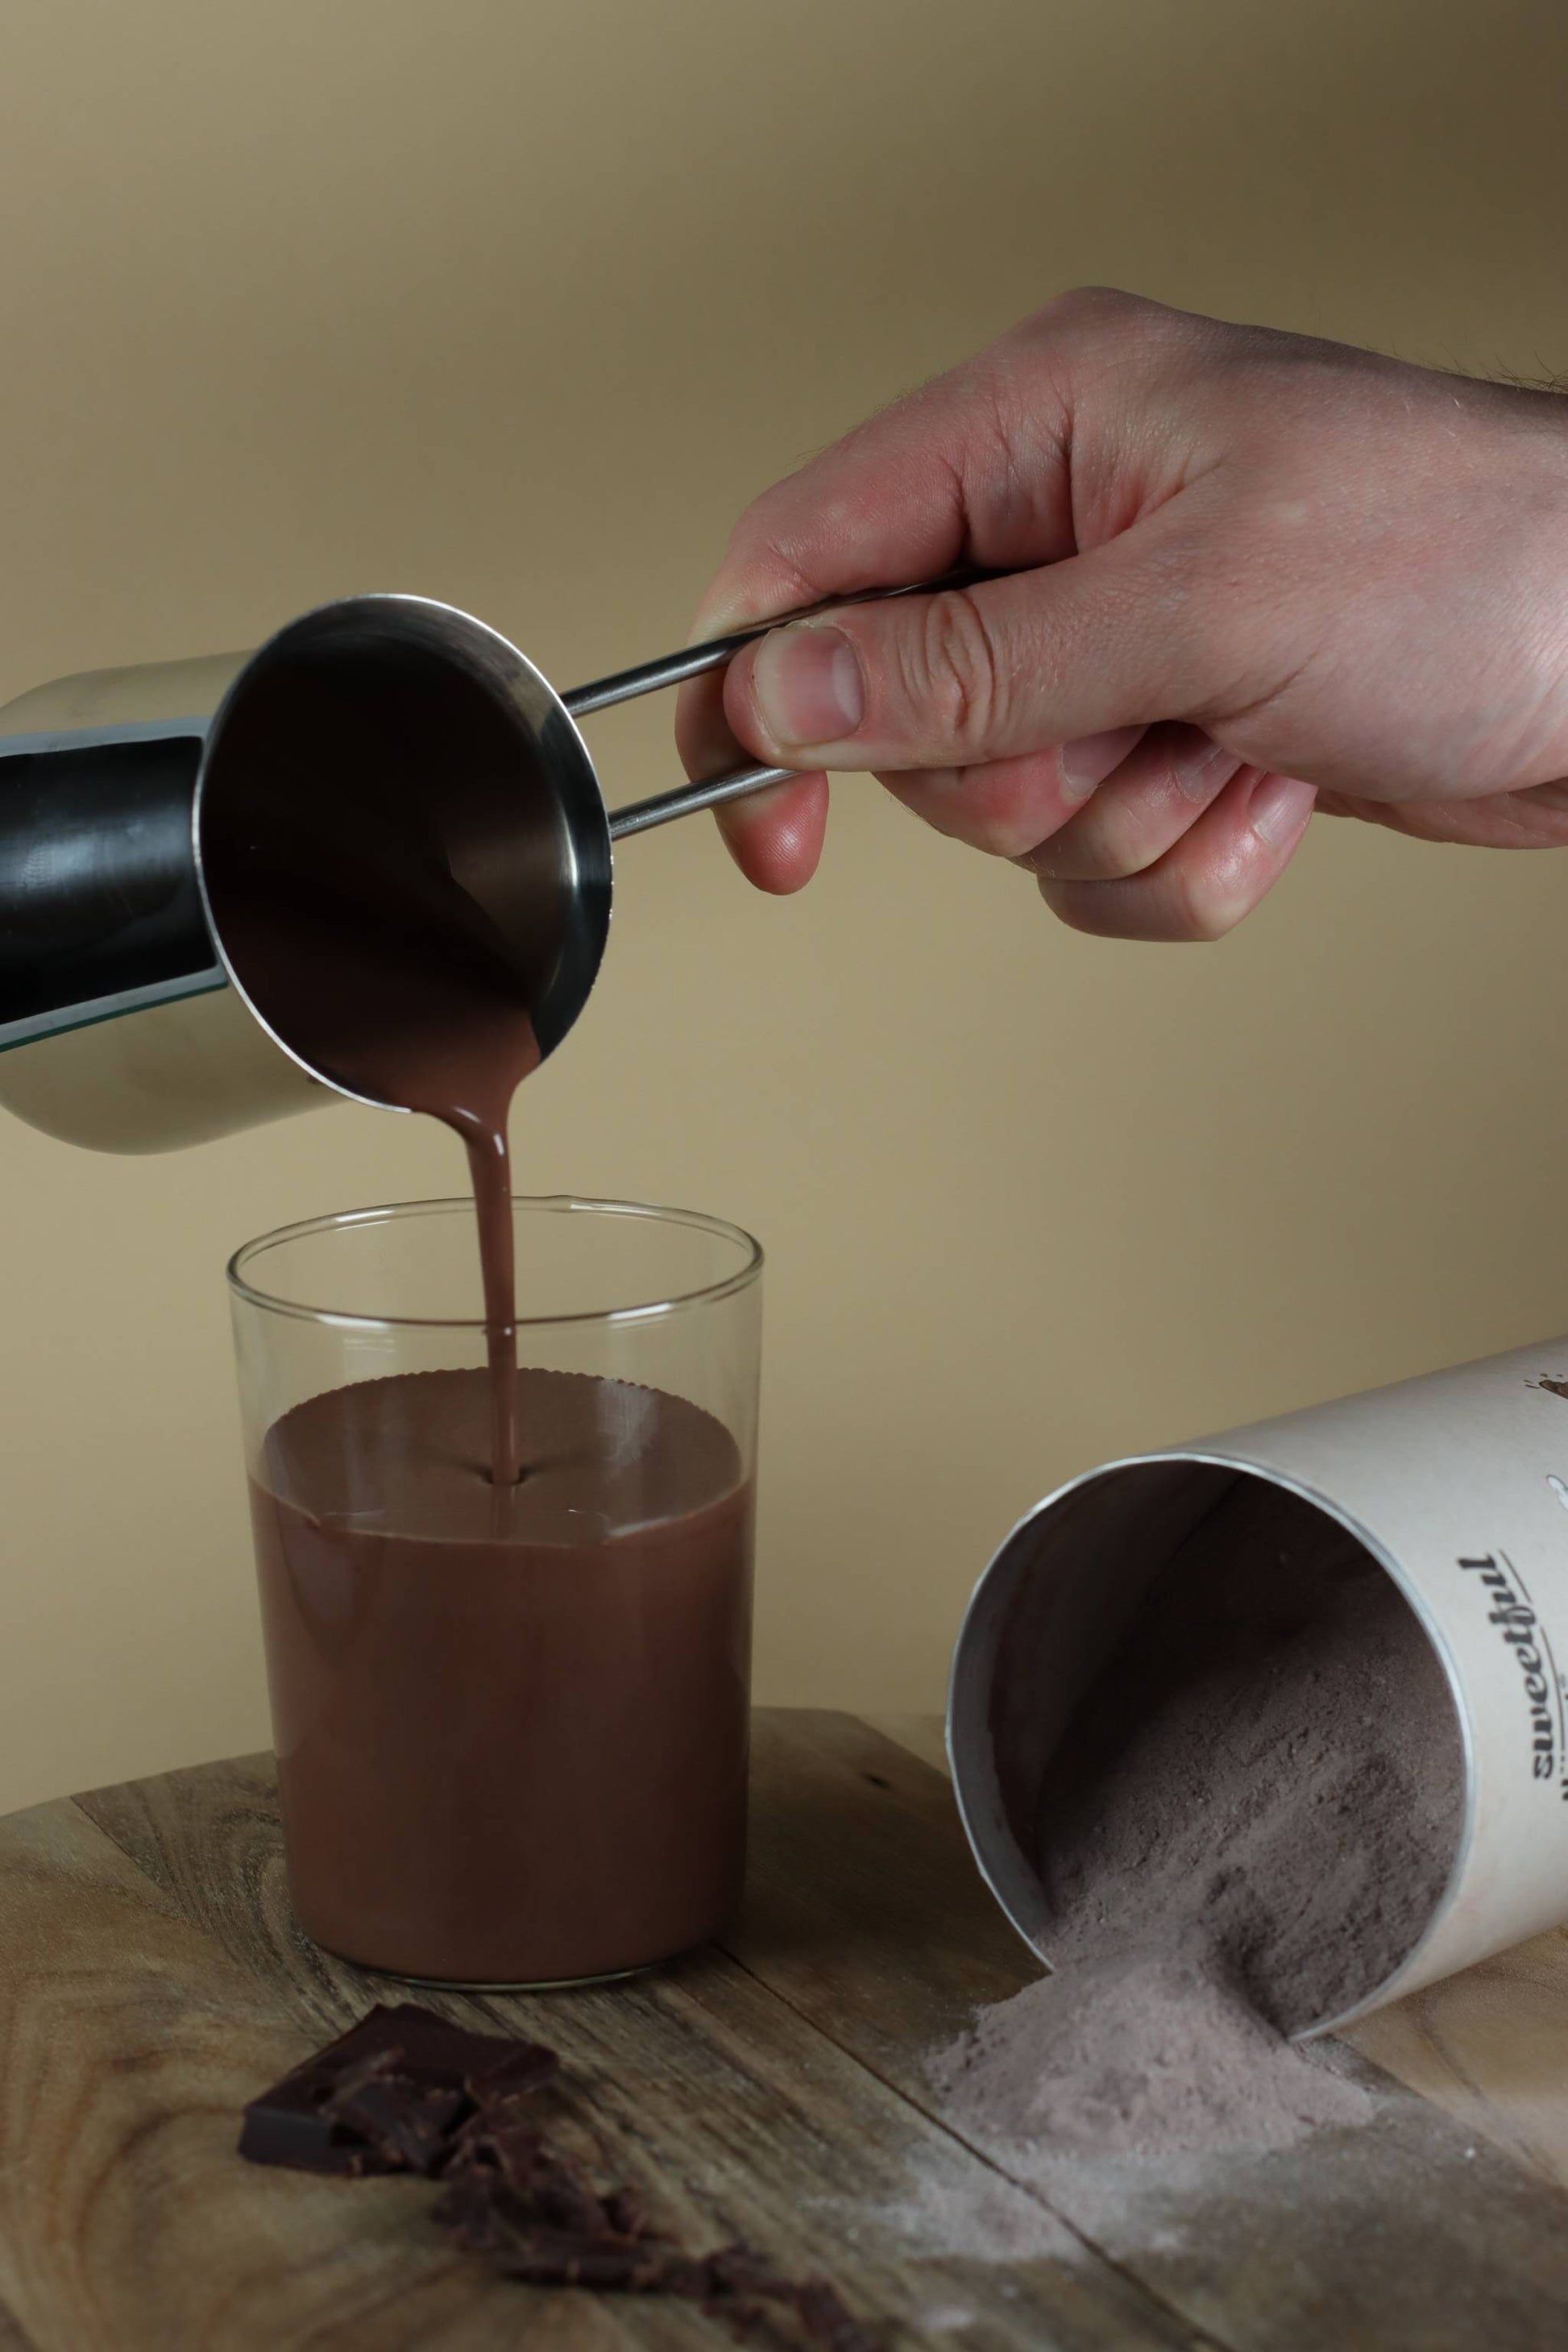 Schokodil - kakaohaltiges Getränkepulver ohne Zuckerzusatz 300 g